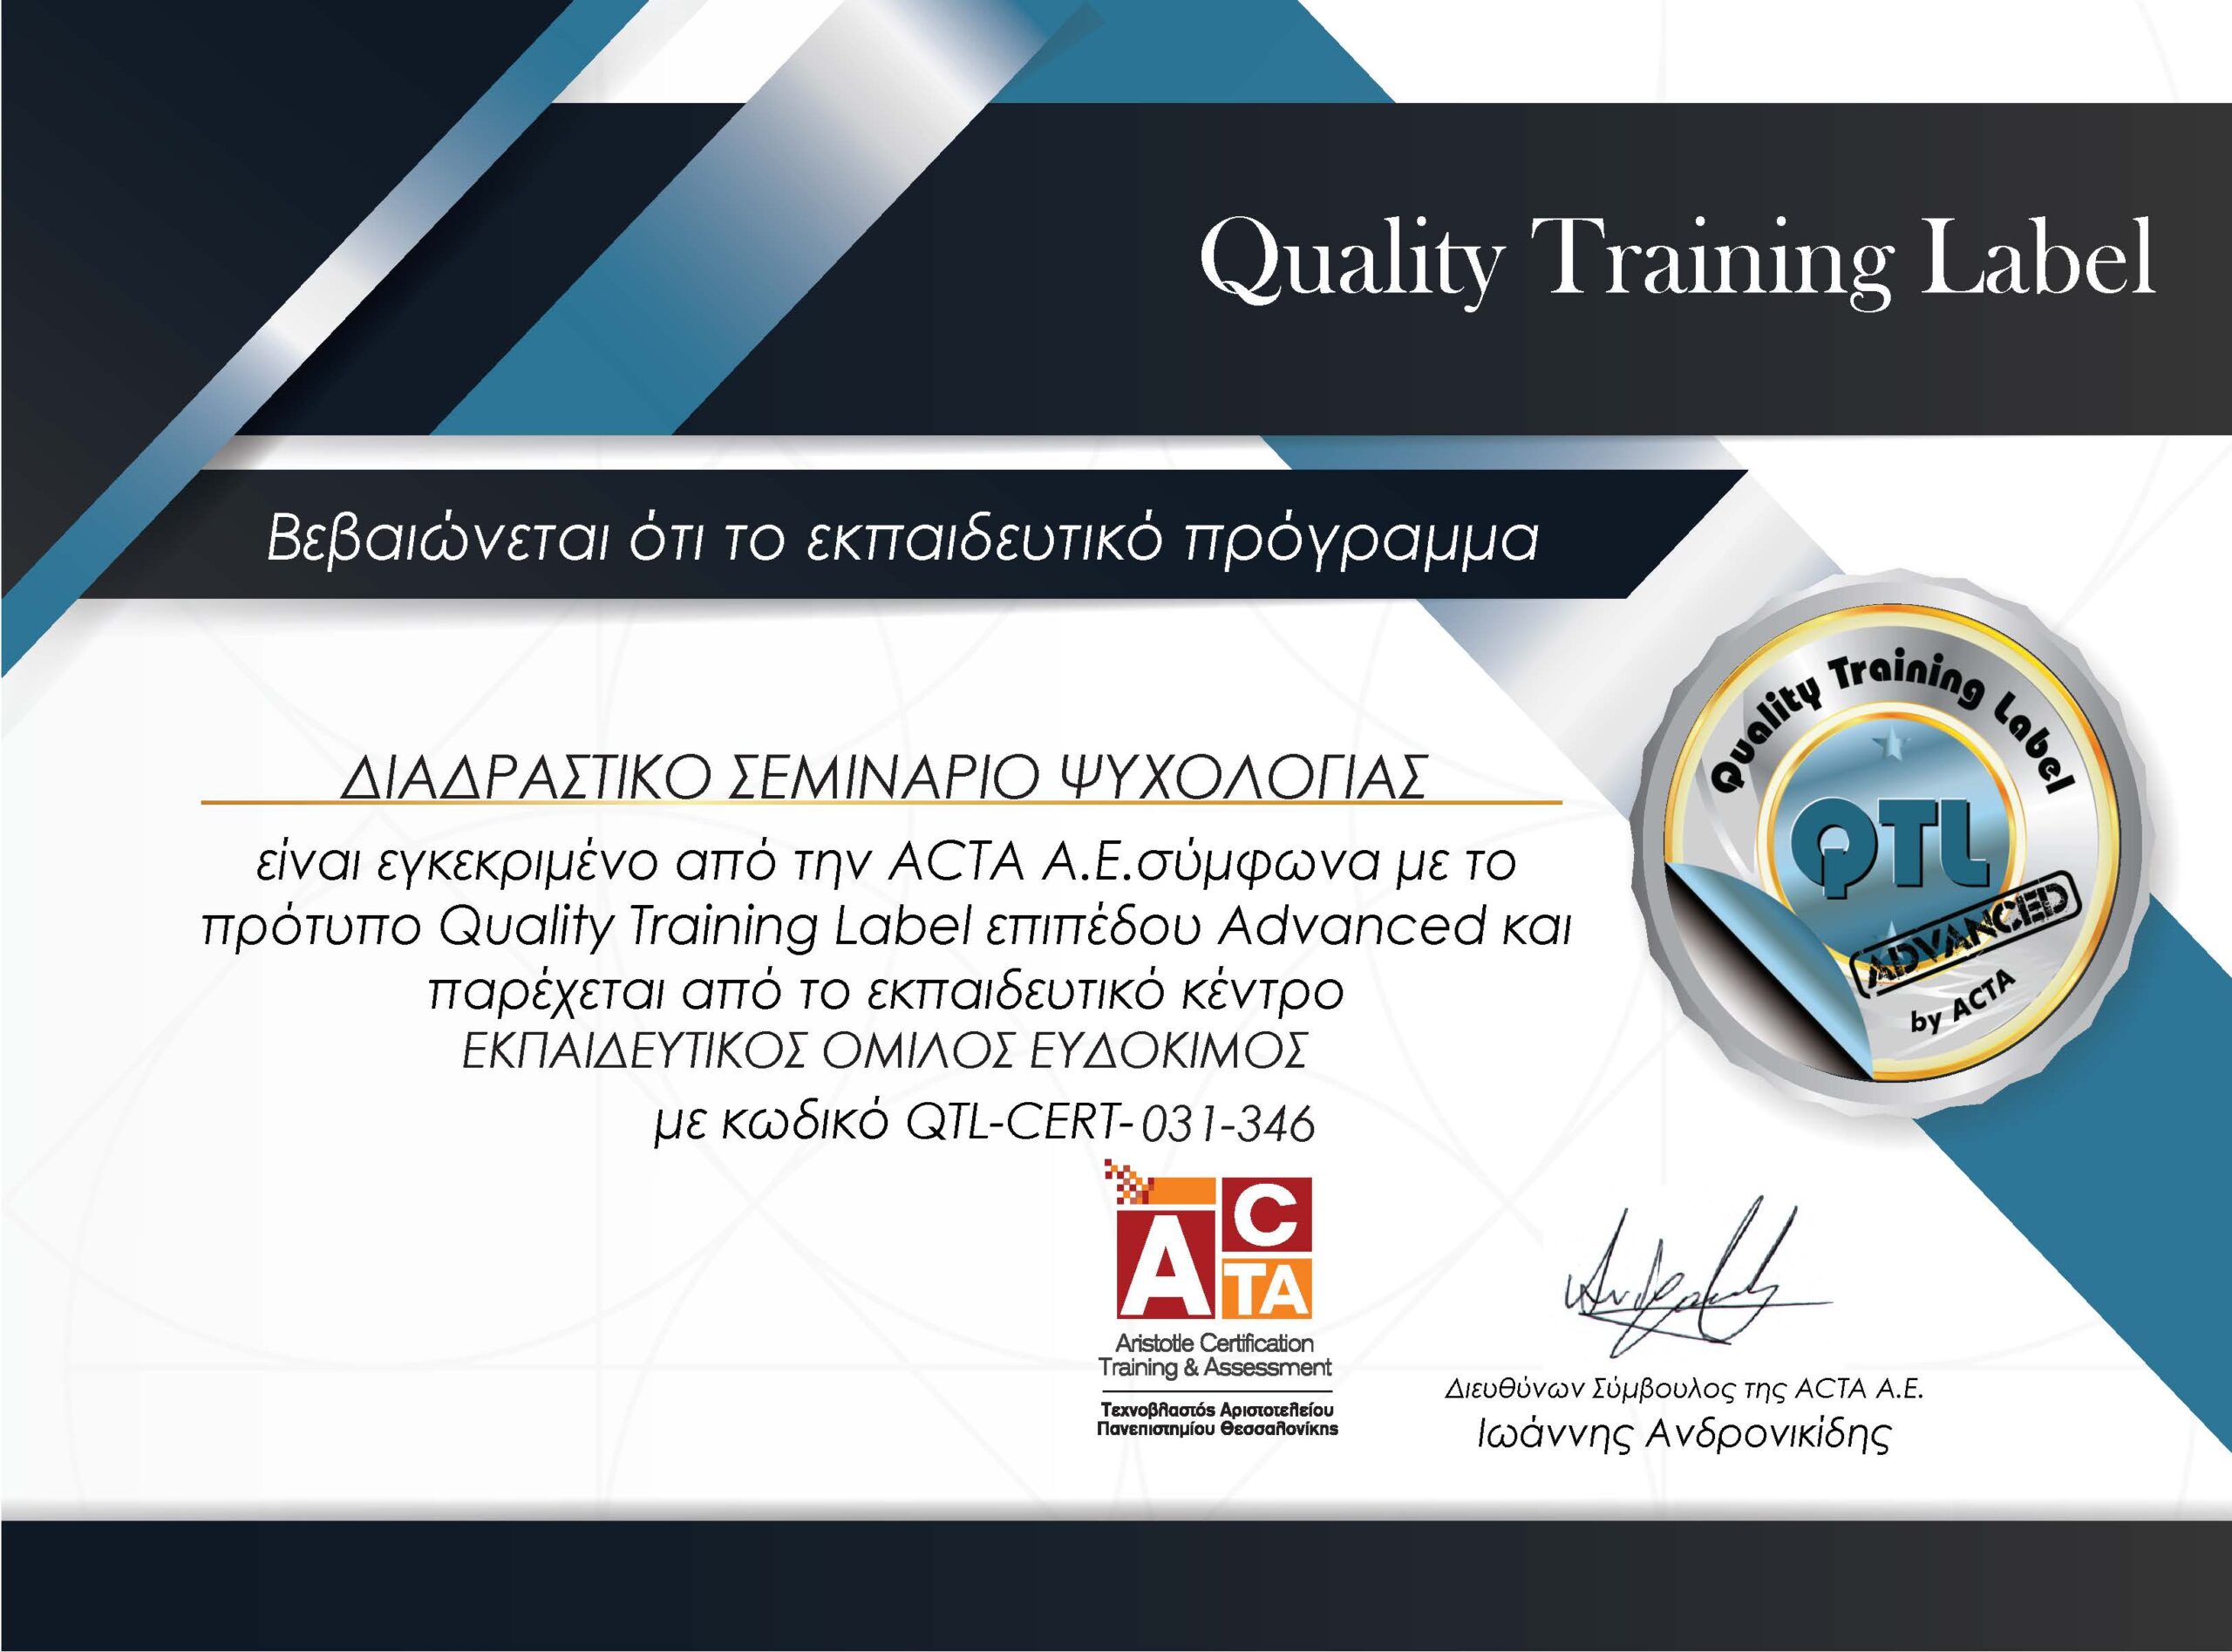 Διαδραστικό σεμινάριο Ψυχολογίας - Πιστοποιημένο εκπαιδευτικό πρόγραμμα της ACTA σύμφωνα με το πρότυπο QTL επιπέδου Advanced